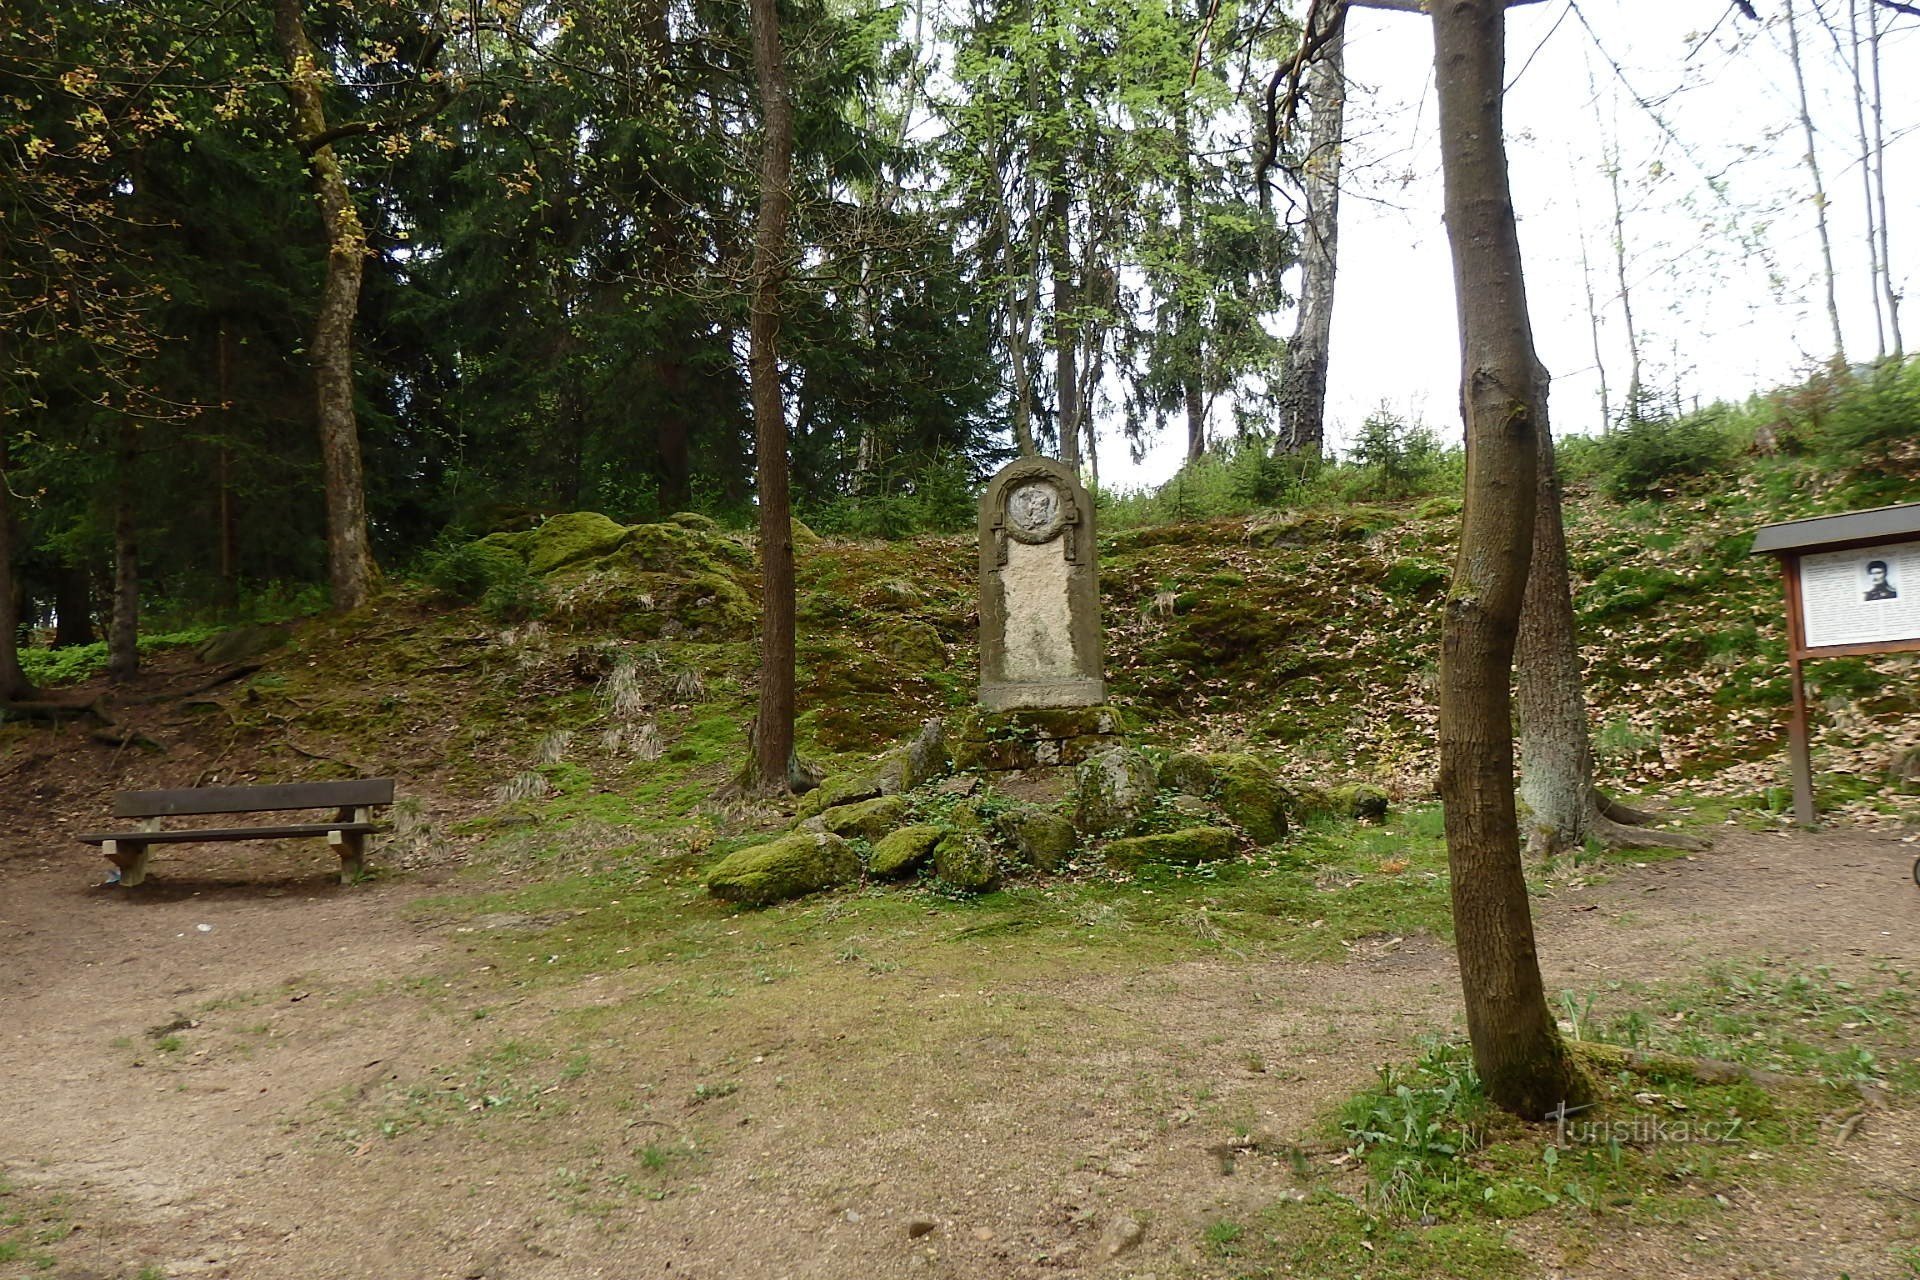 Monumento al poeta alemán K. Theodor Körner